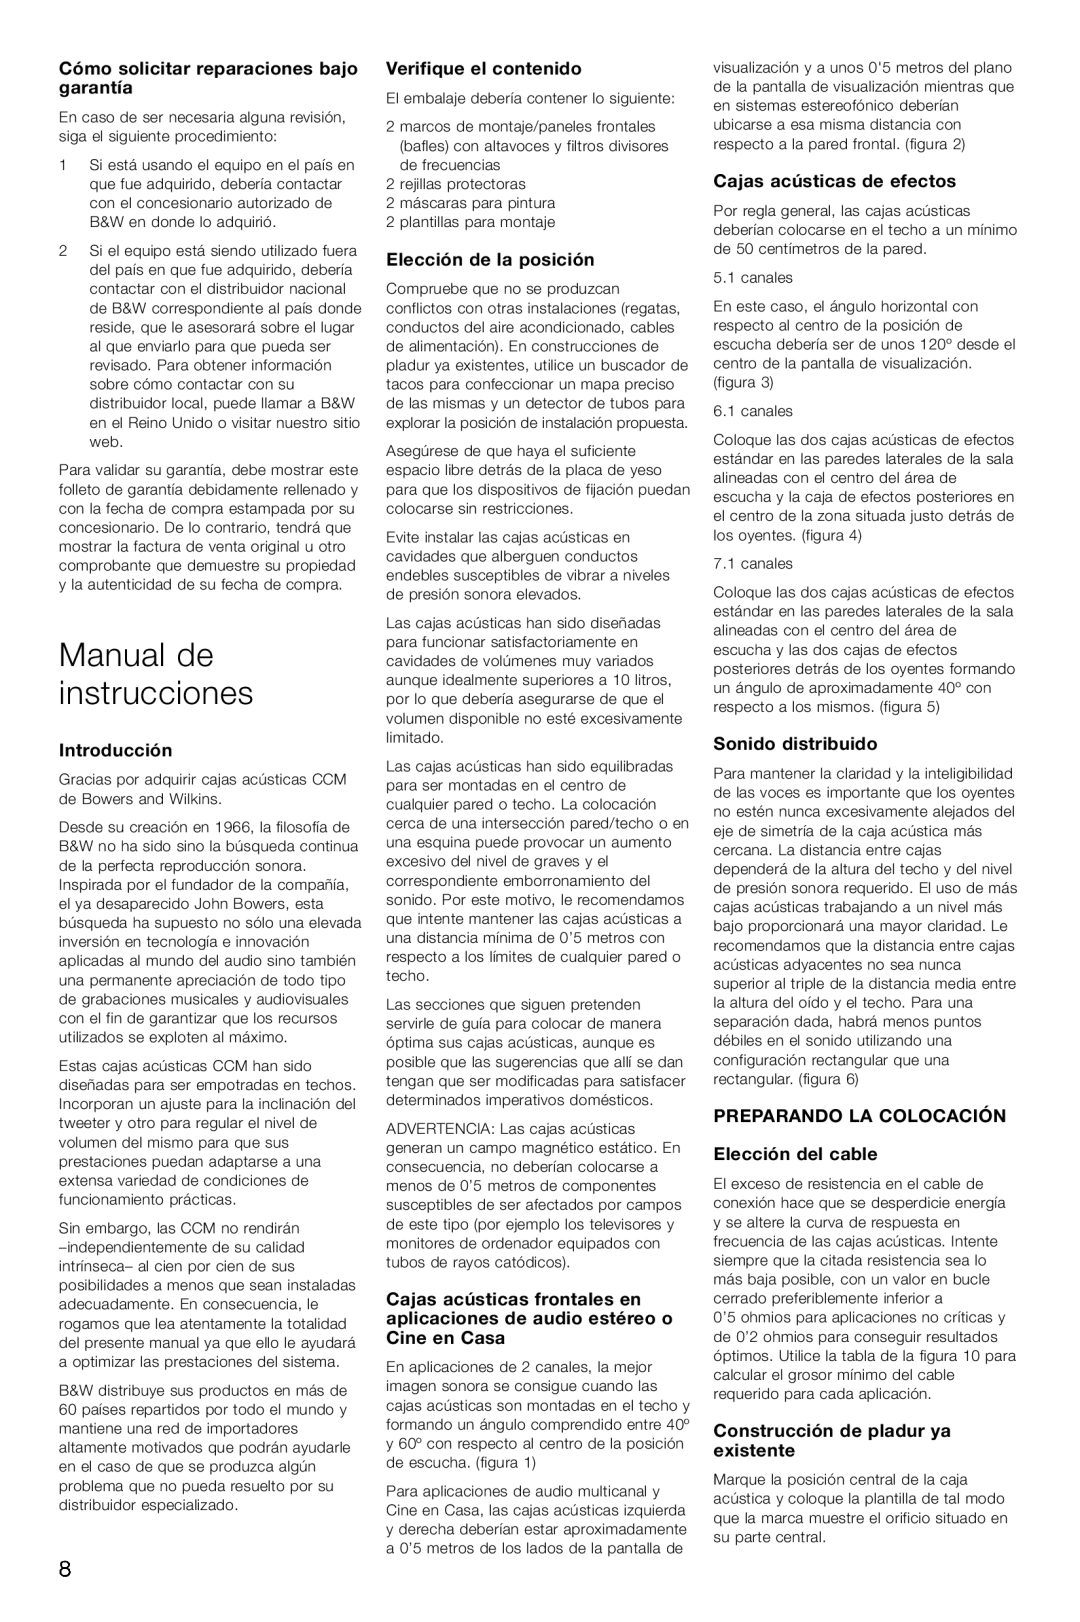 Bowers & Wilkins CCM626 owner manual Manual de instrucciones, Cómo solicitar reparaciones bajo garantía, Introducción 